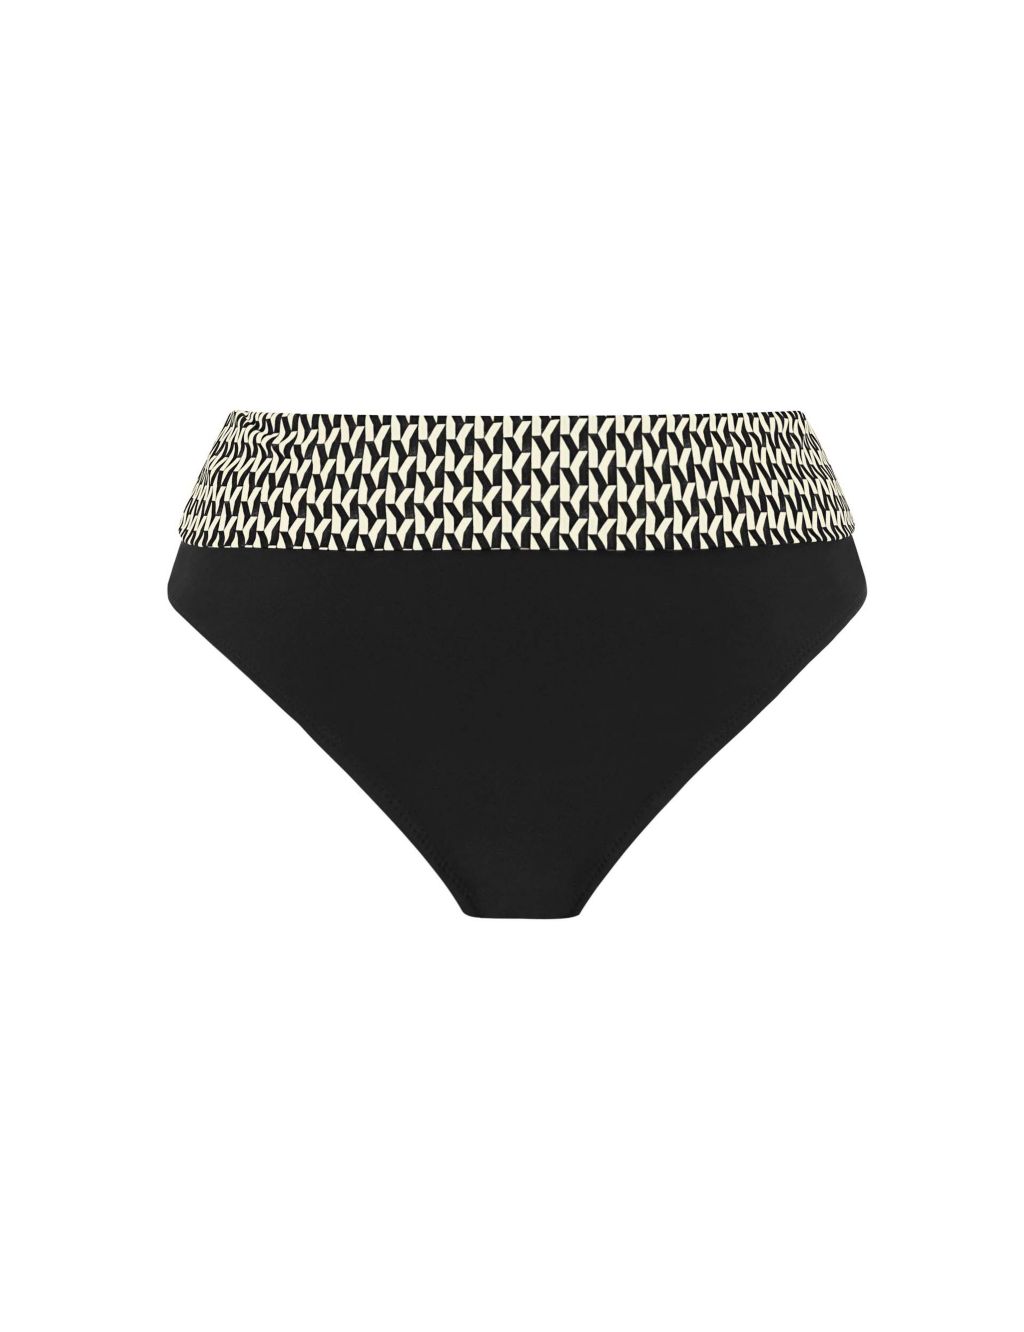 Koh Lipe Geometric Roll Top Bikini Bottoms 1 of 5